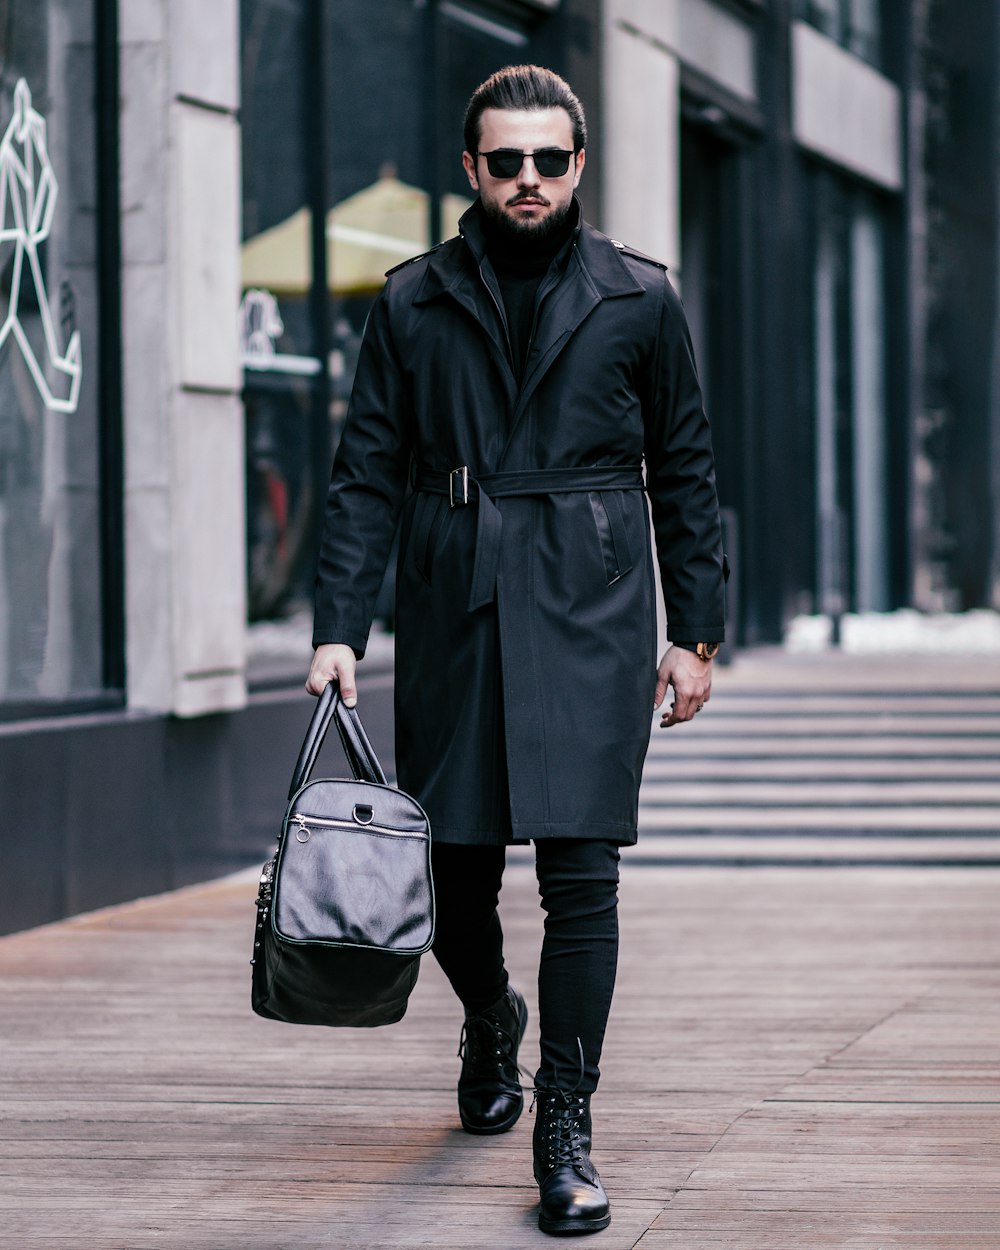 Un homme marchant dans une rue portant un sac